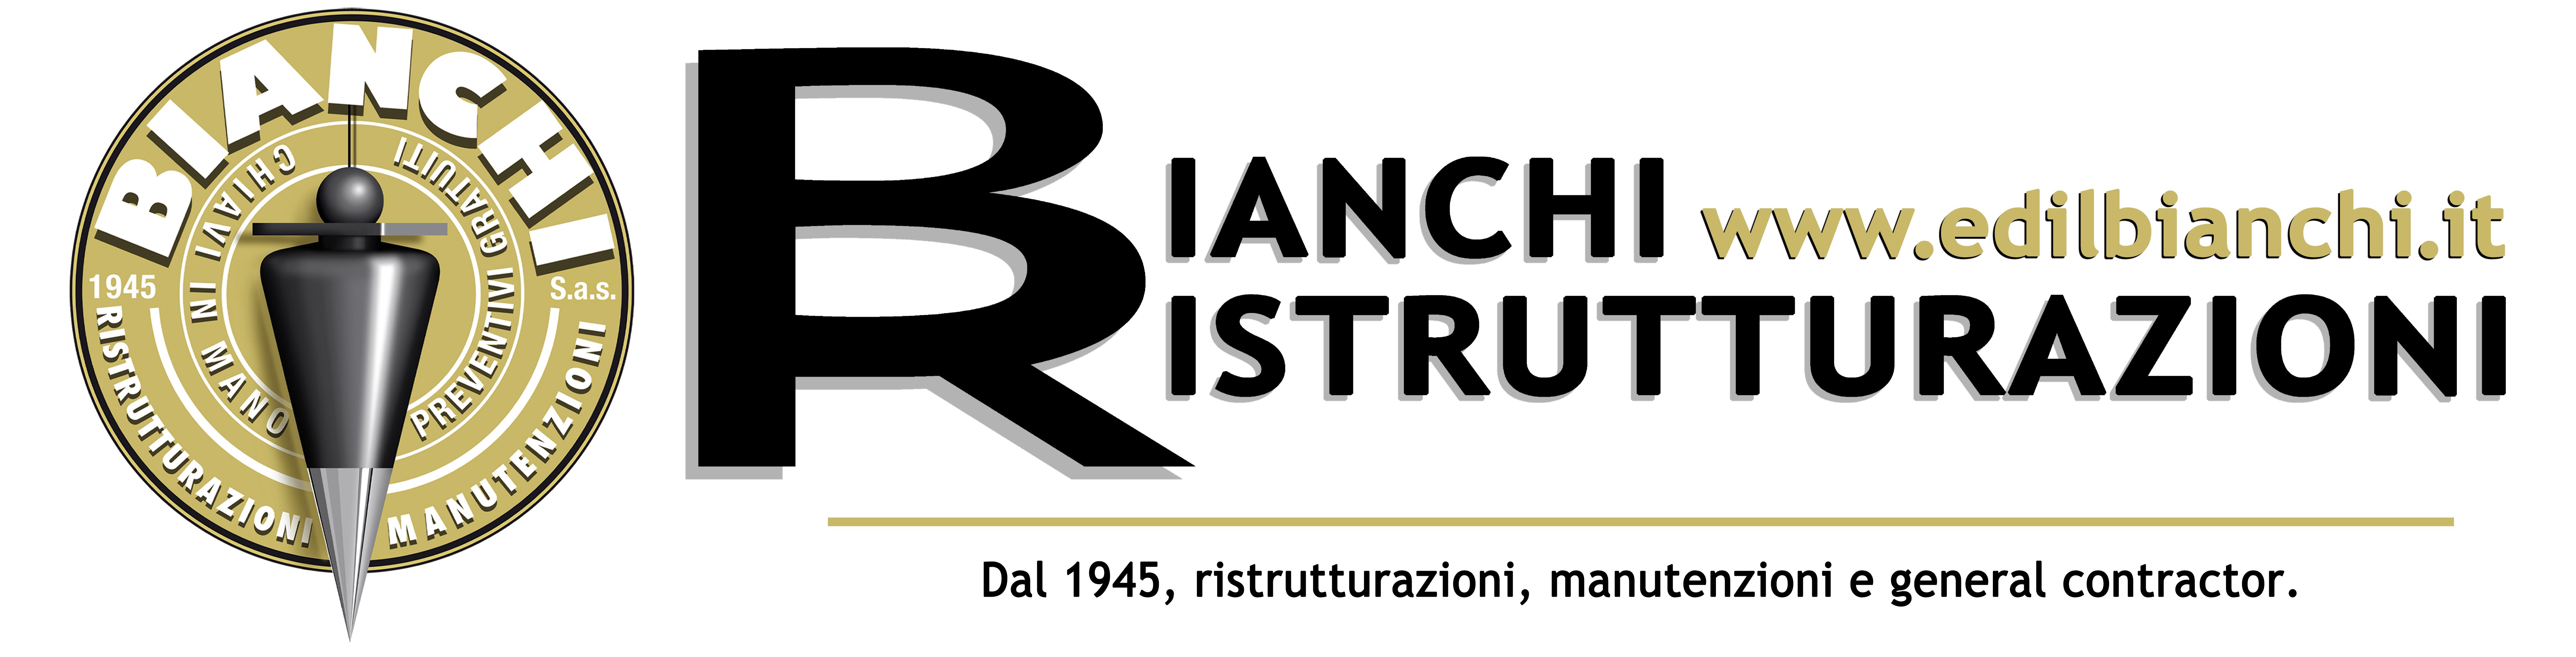 Bianchi Ristrutturazioni - edilbianchi.it - Dal 1945, ristrutturazioni, manutenzioni e general contractor